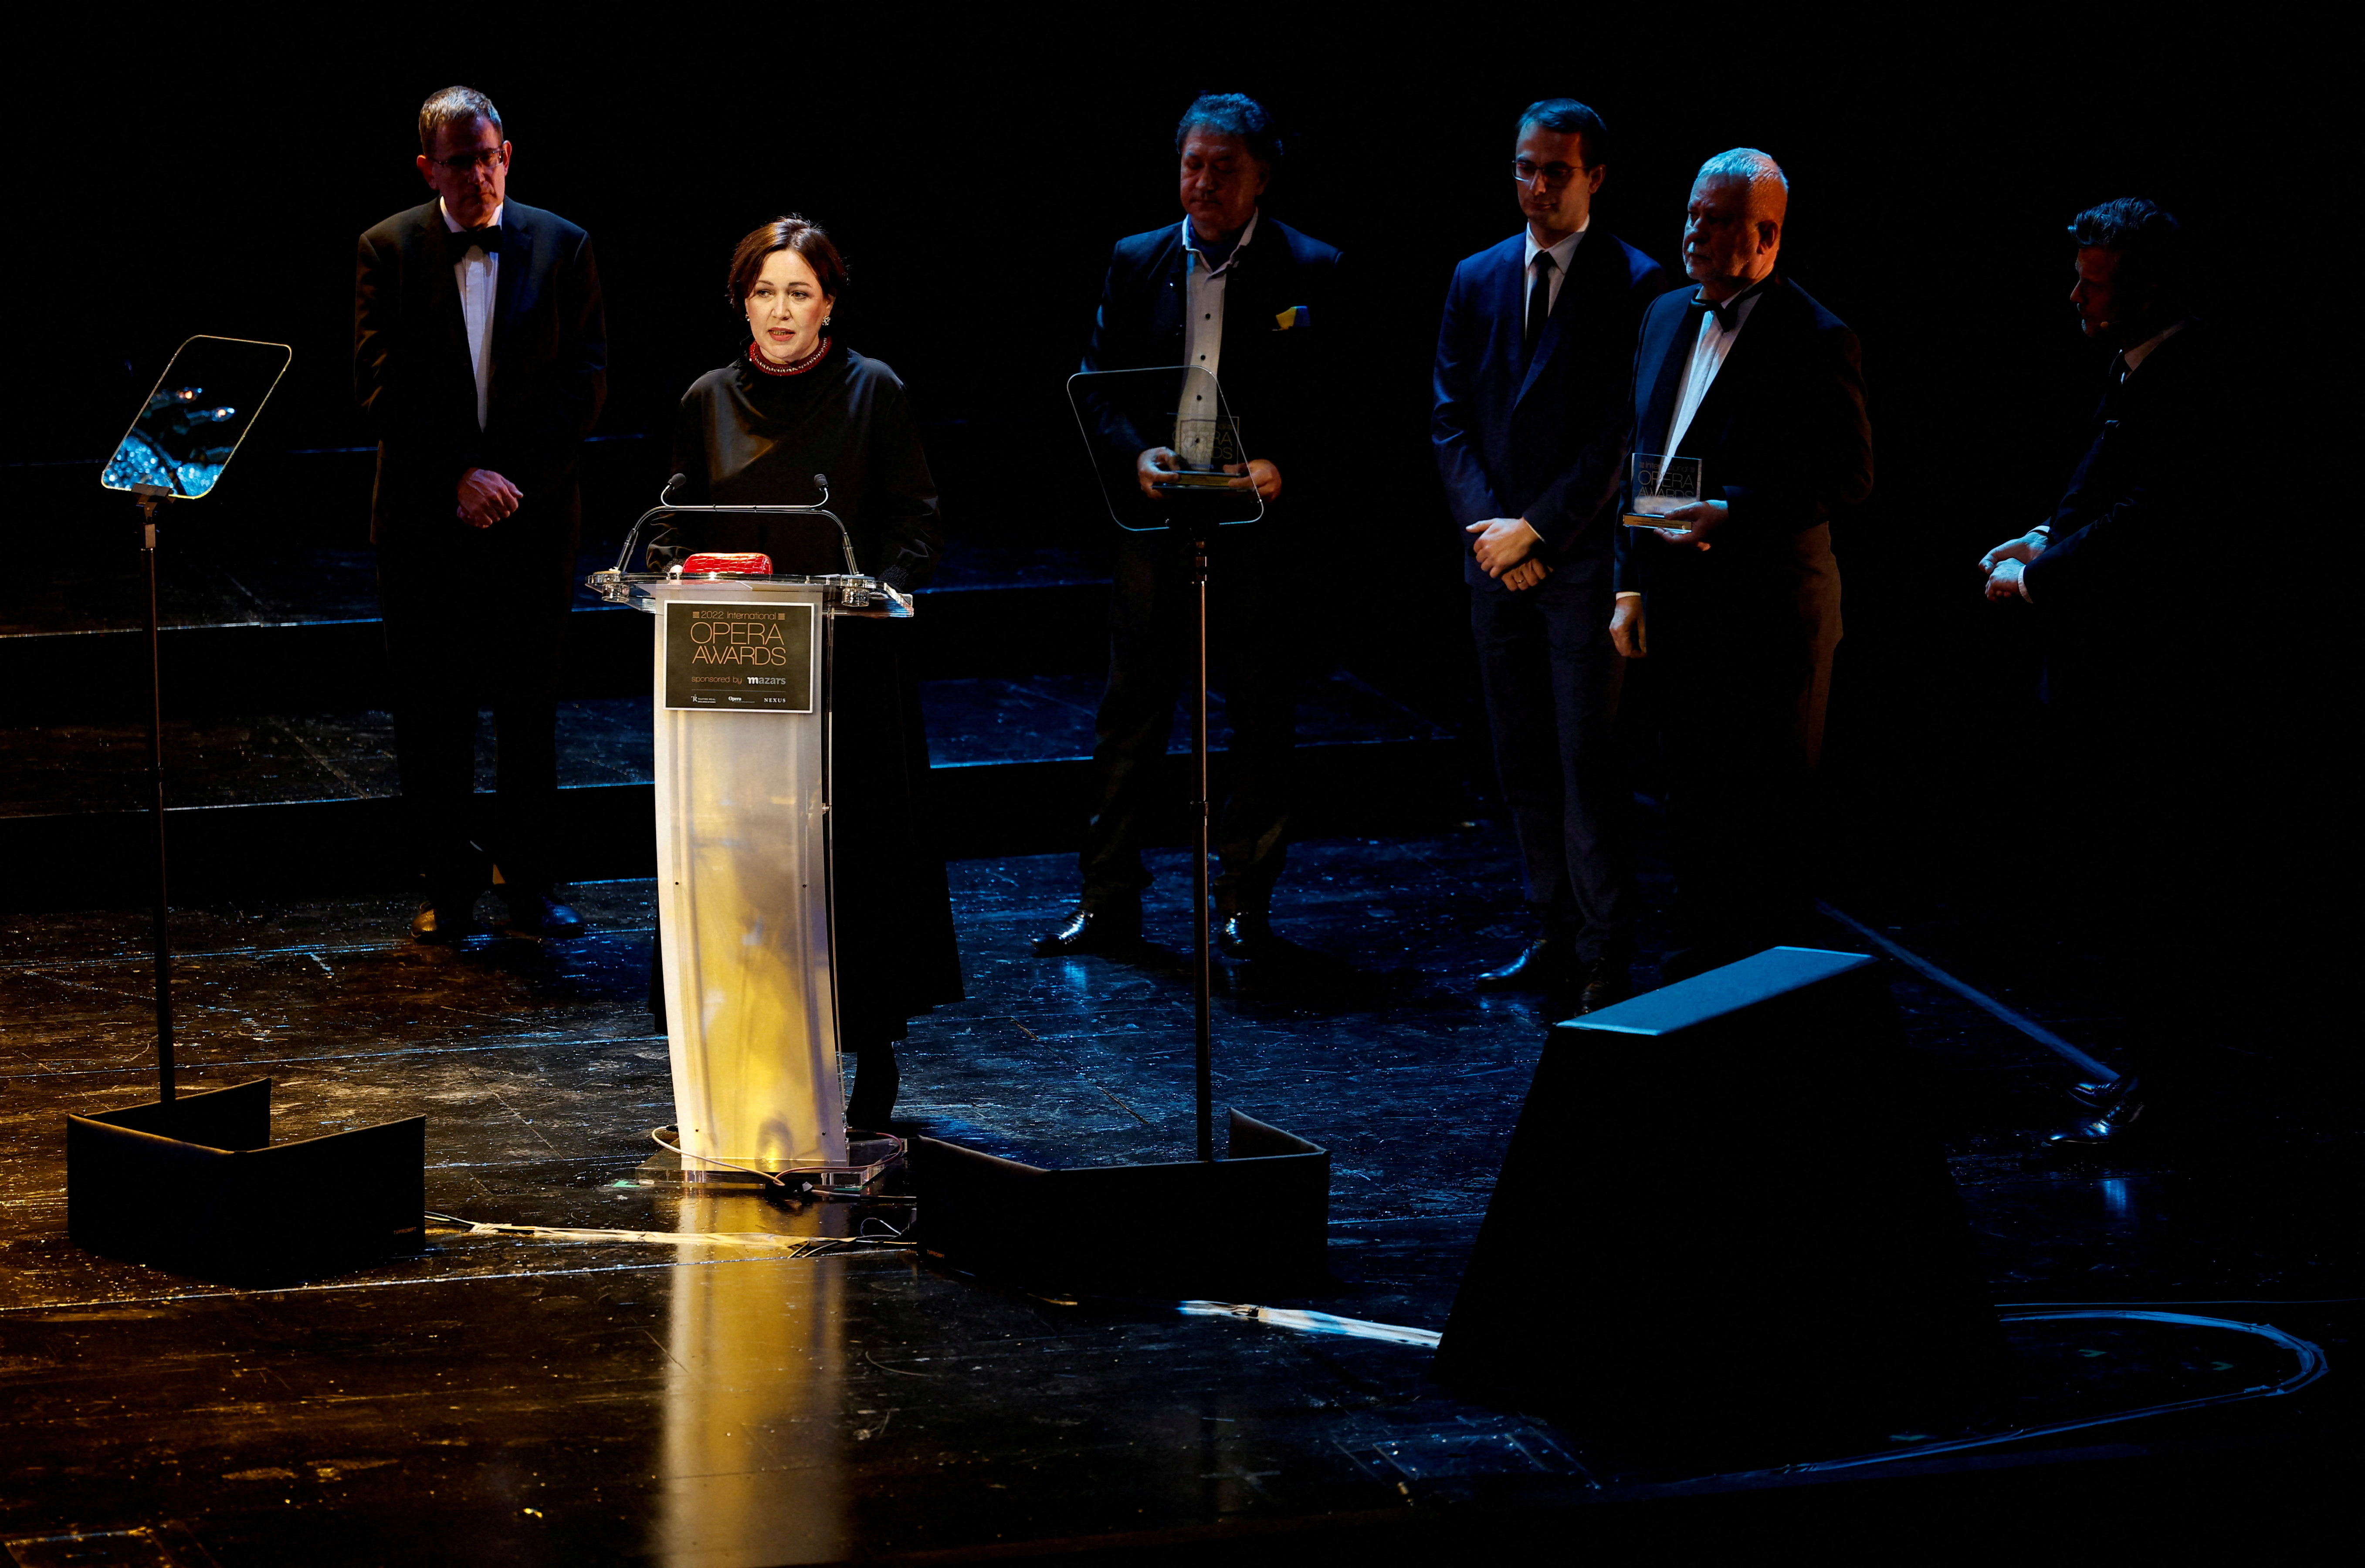 International Opera awards take place in Madrid